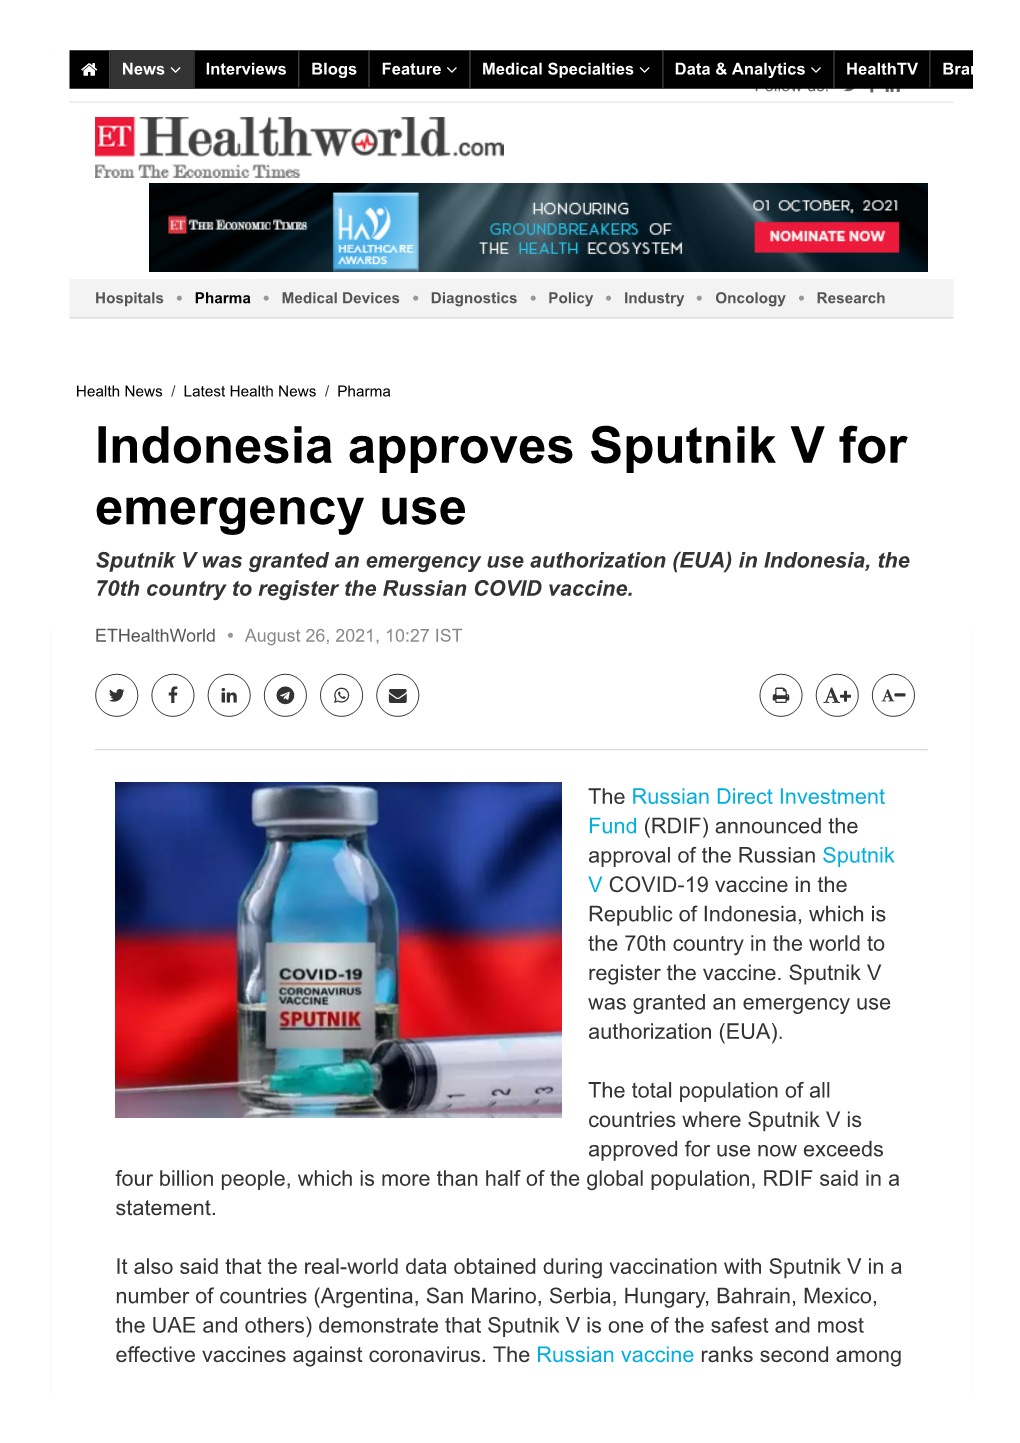 Indonesia Approves Sputnik V for Emergency